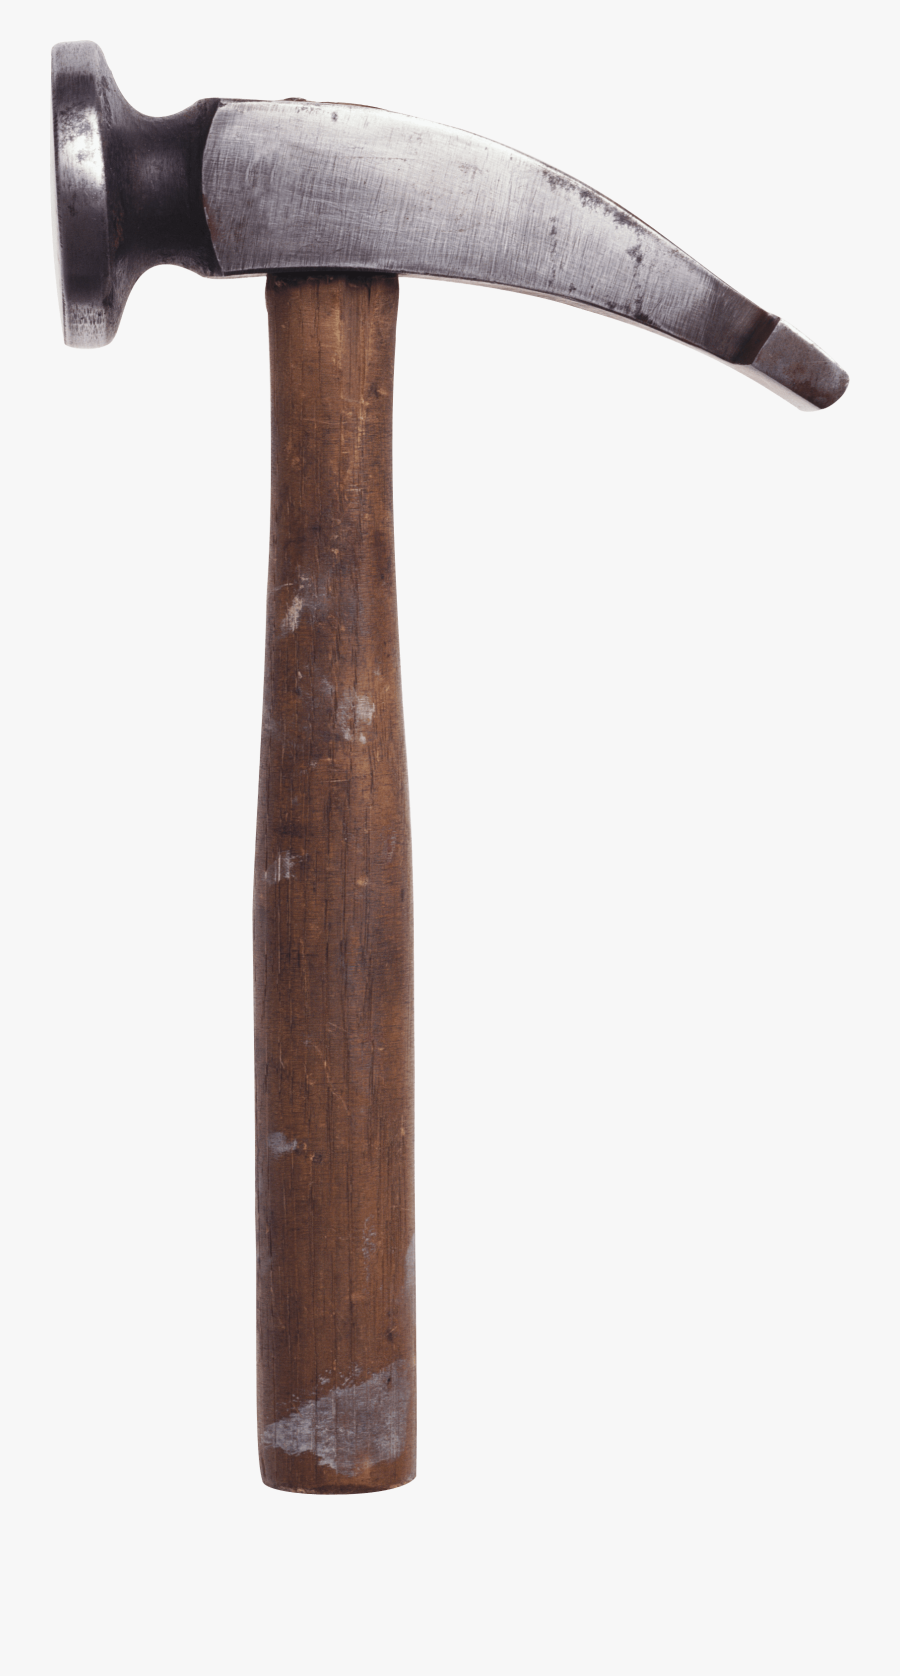 Vintage Hammer - Vintage Hammer Png, Transparent Clipart